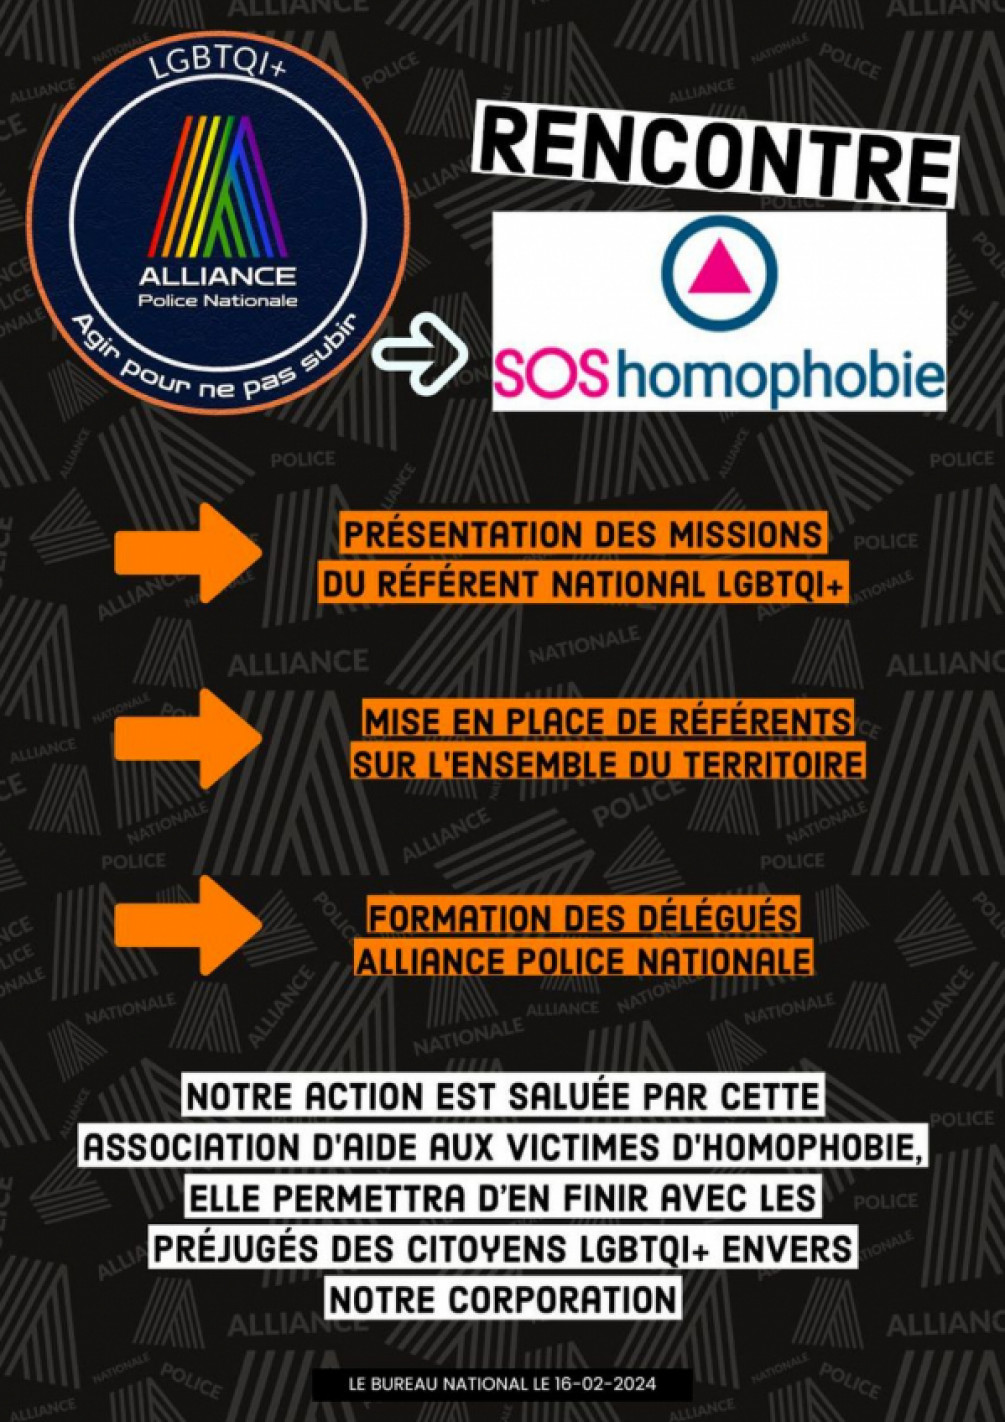 Rencontre SOS homophobie 